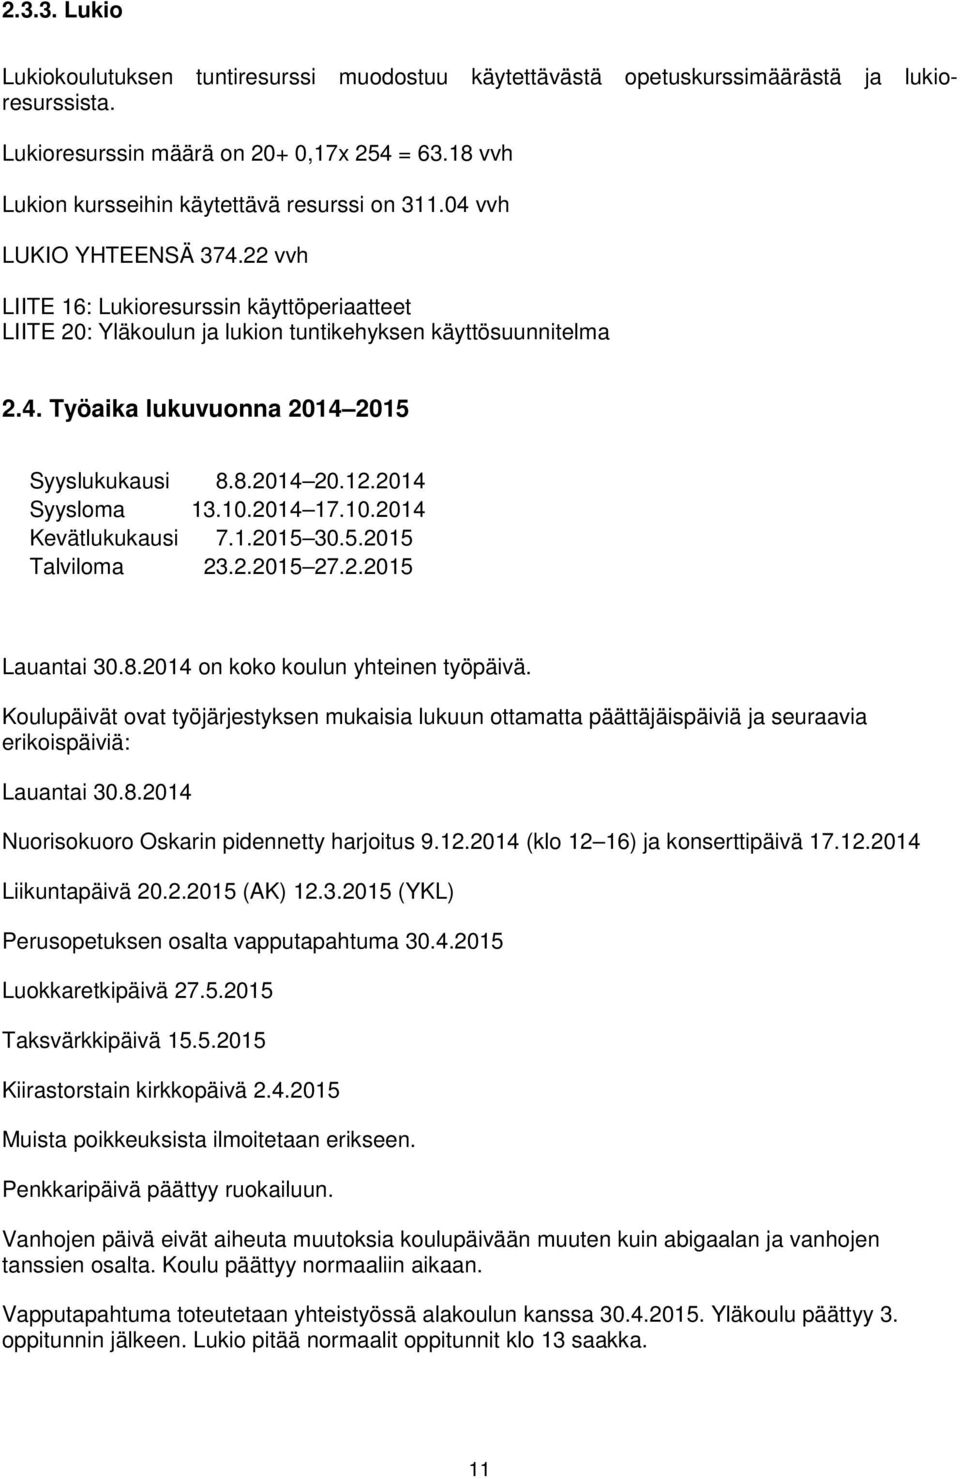 8.2014 20.12.2014 Syysloma 13.10.2014 17.10.2014 Kevätlukukausi 7.1.2015 30.5.2015 Talviloma 23.2.2015 27.2.2015 Lauantai 30.8.2014 on koko koulun yhteinen työpäivä.